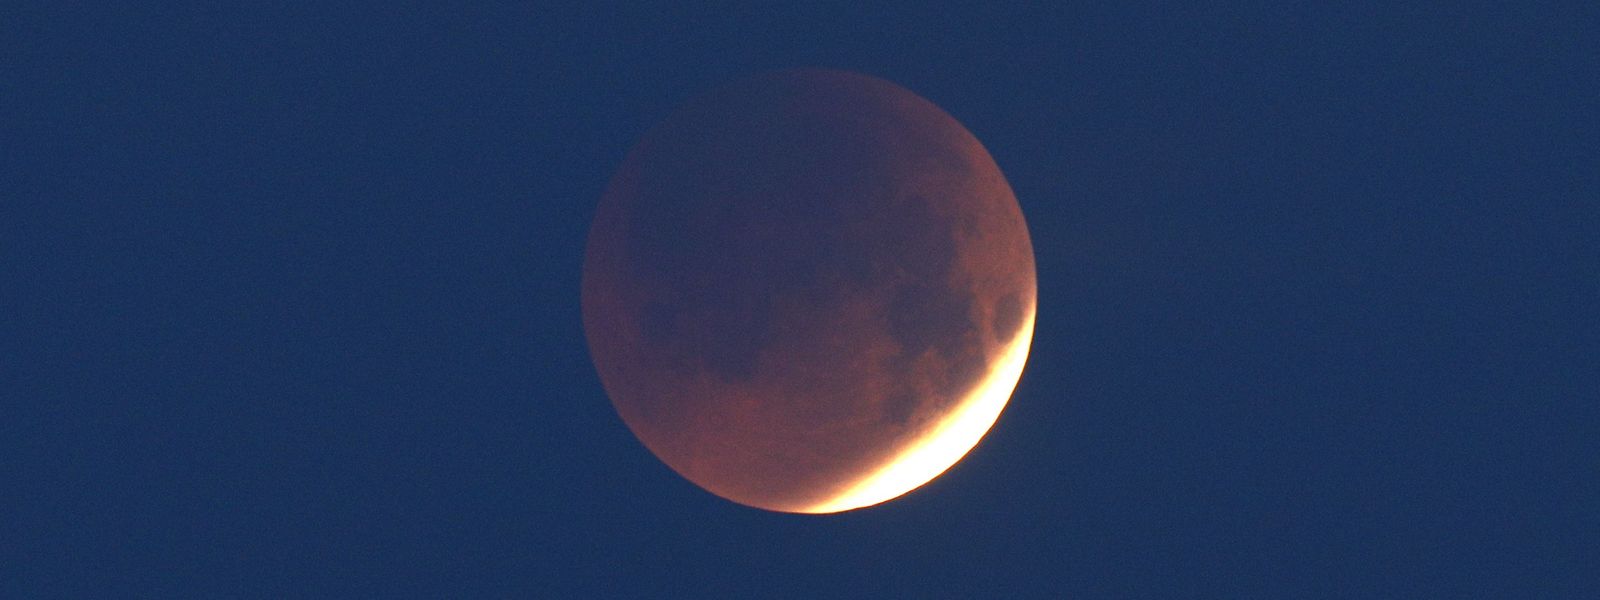 O eclipse lunar desta madrugada visto a partir da ilha francesa mediterrânica de Córsega.